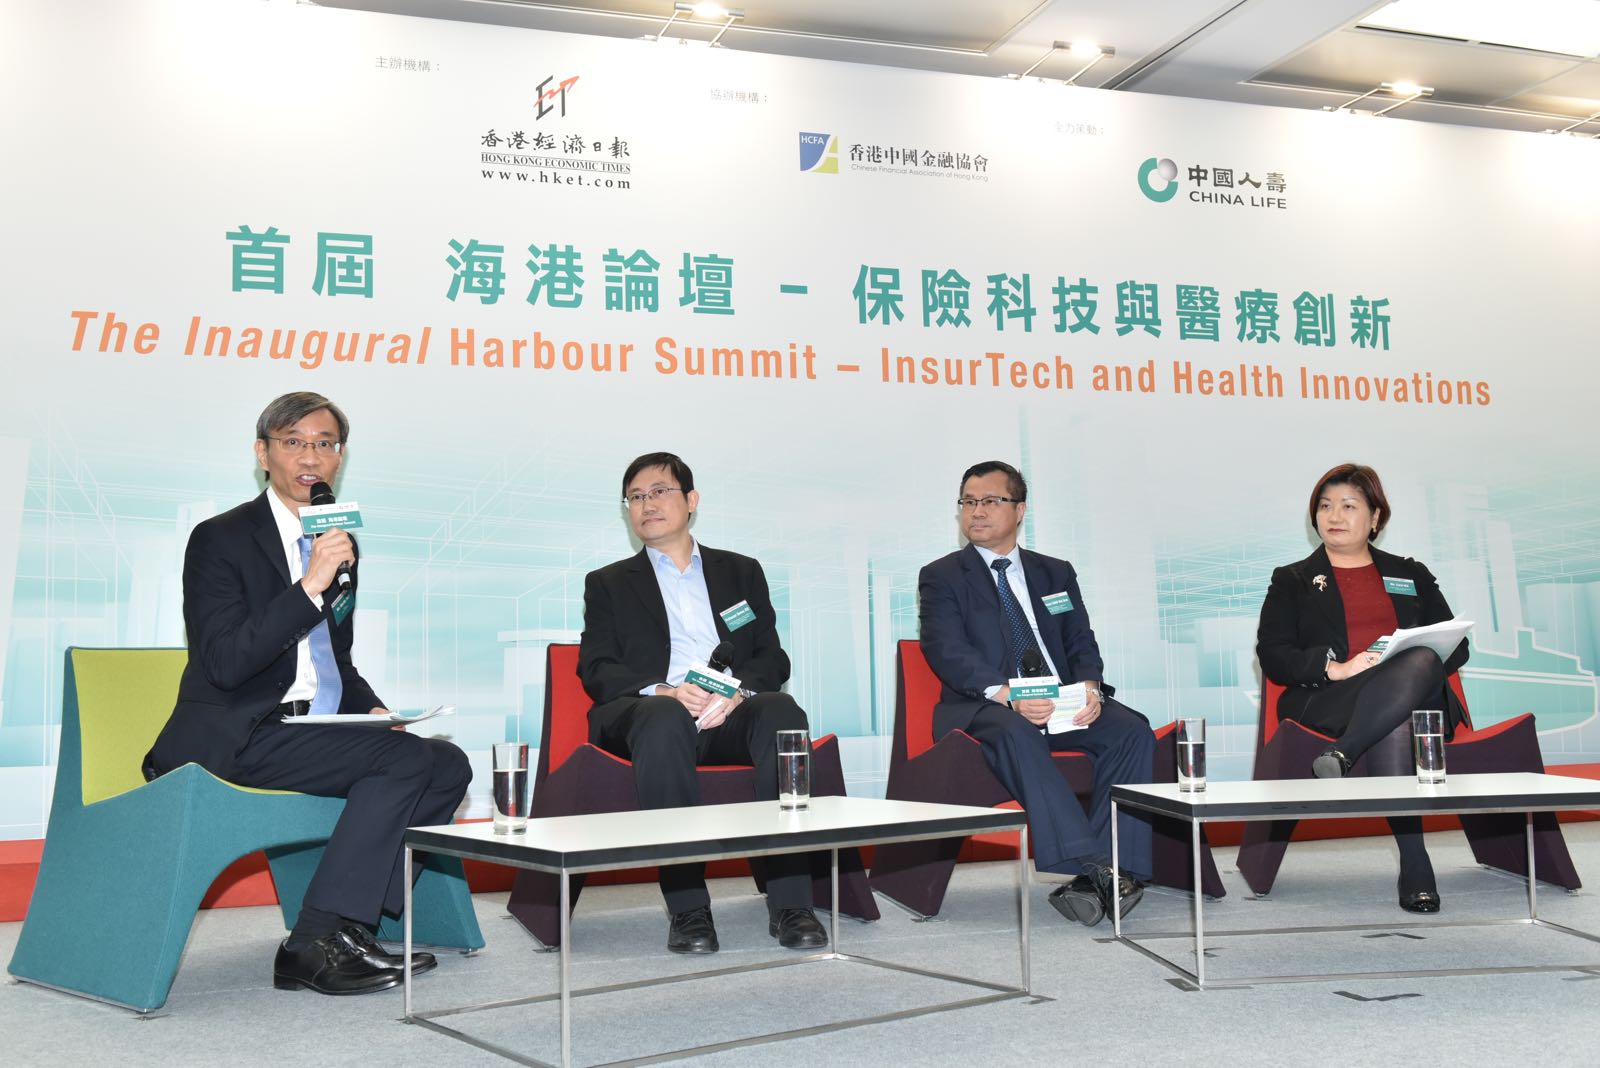 「首届 海港论坛-保险科技与医疗创新」成功举办，探讨保险科技及医疗创新